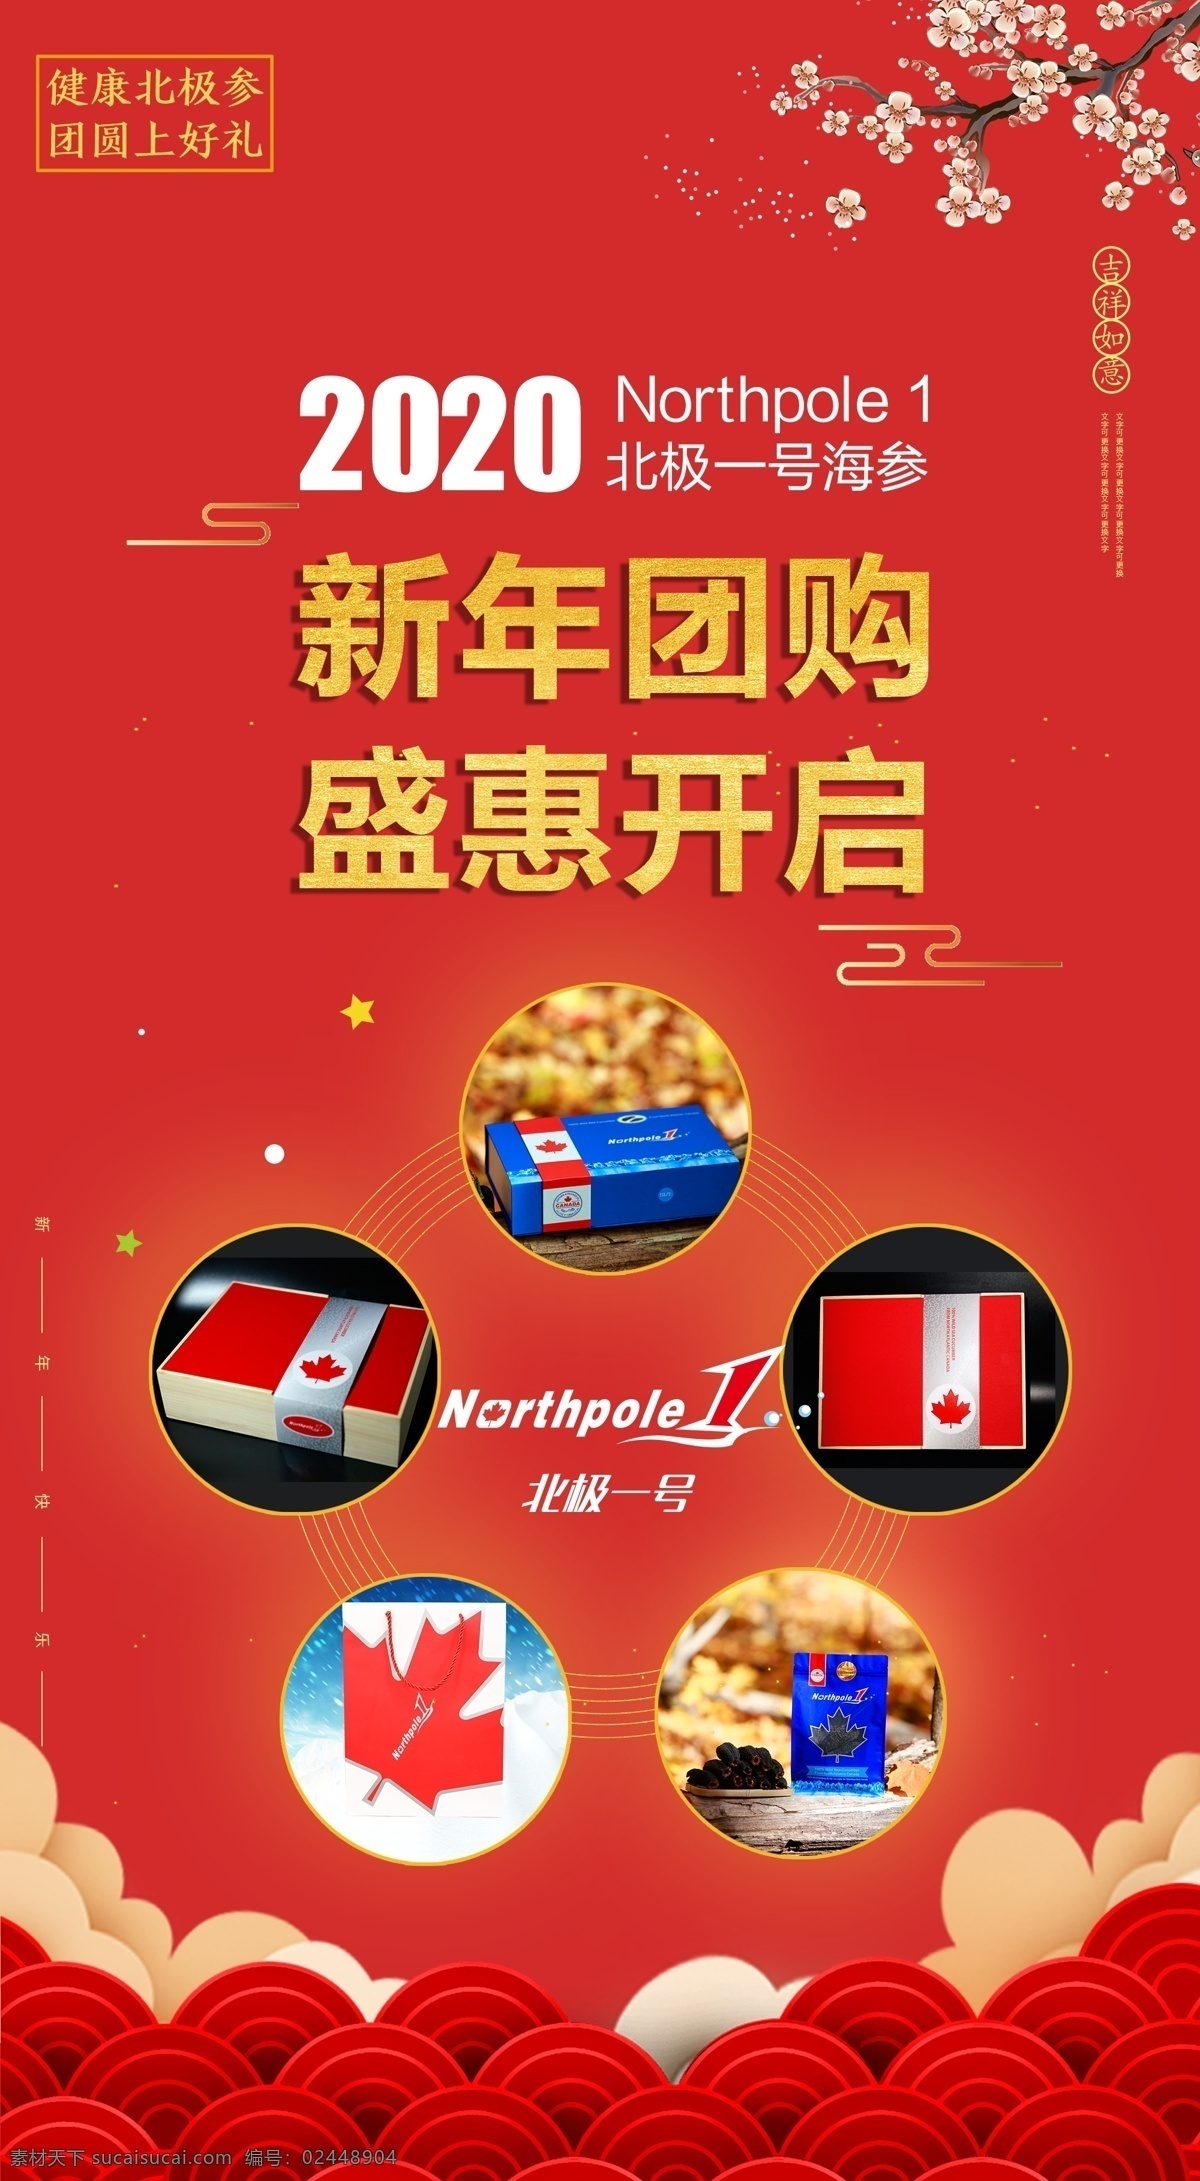 海参 团购 新年 促销活动 宣传 图 套餐 活动 海报 手机端 2020年 开启